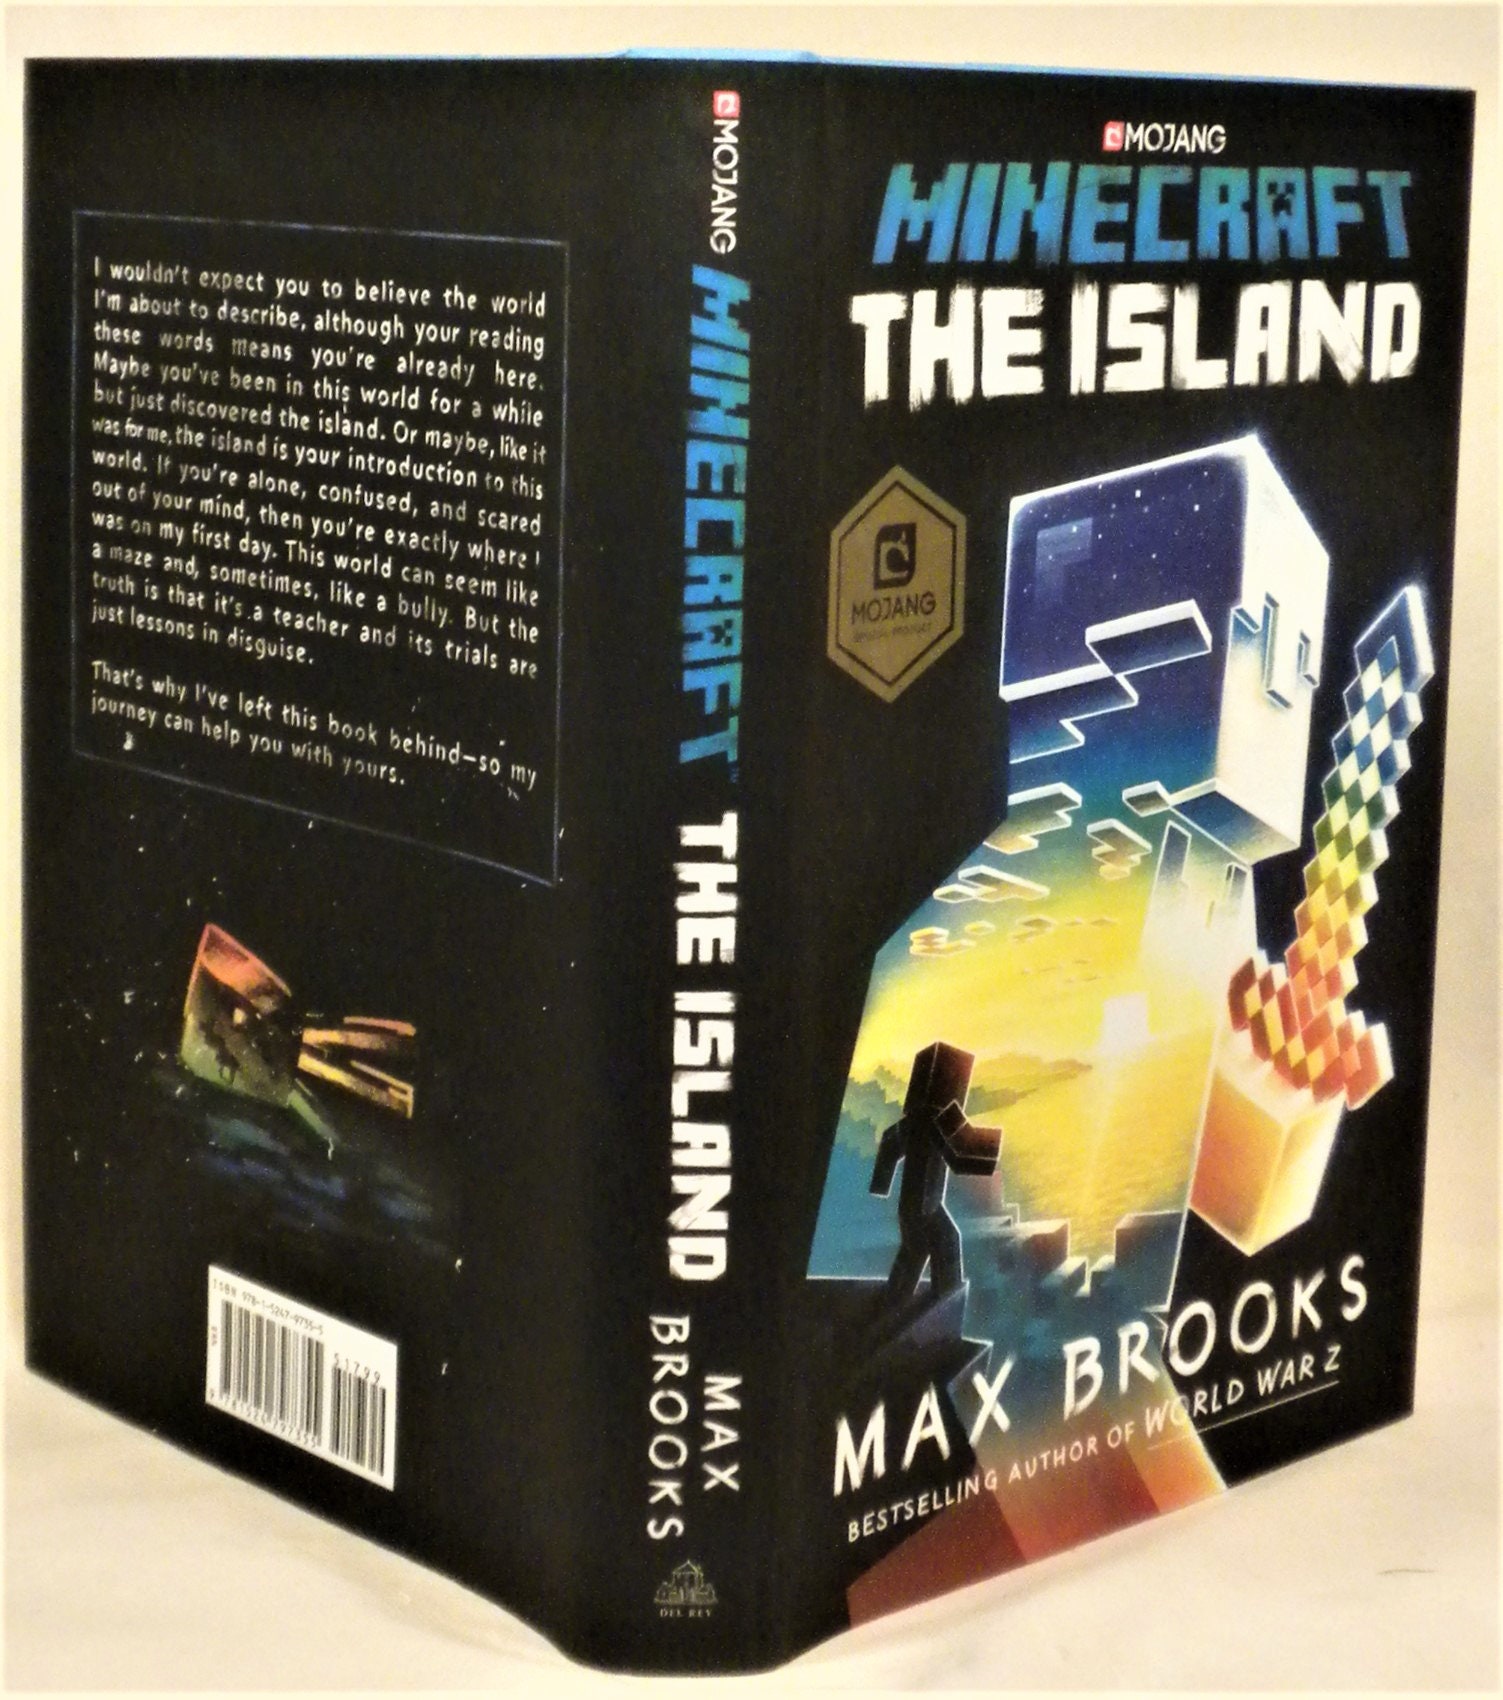 Max island. Макс Брукс майнкрафт остров. Макс Брукс книги майнкрафт. Книга остров Макс Брукс. Minecraft: the Island Макс Брукс книга.